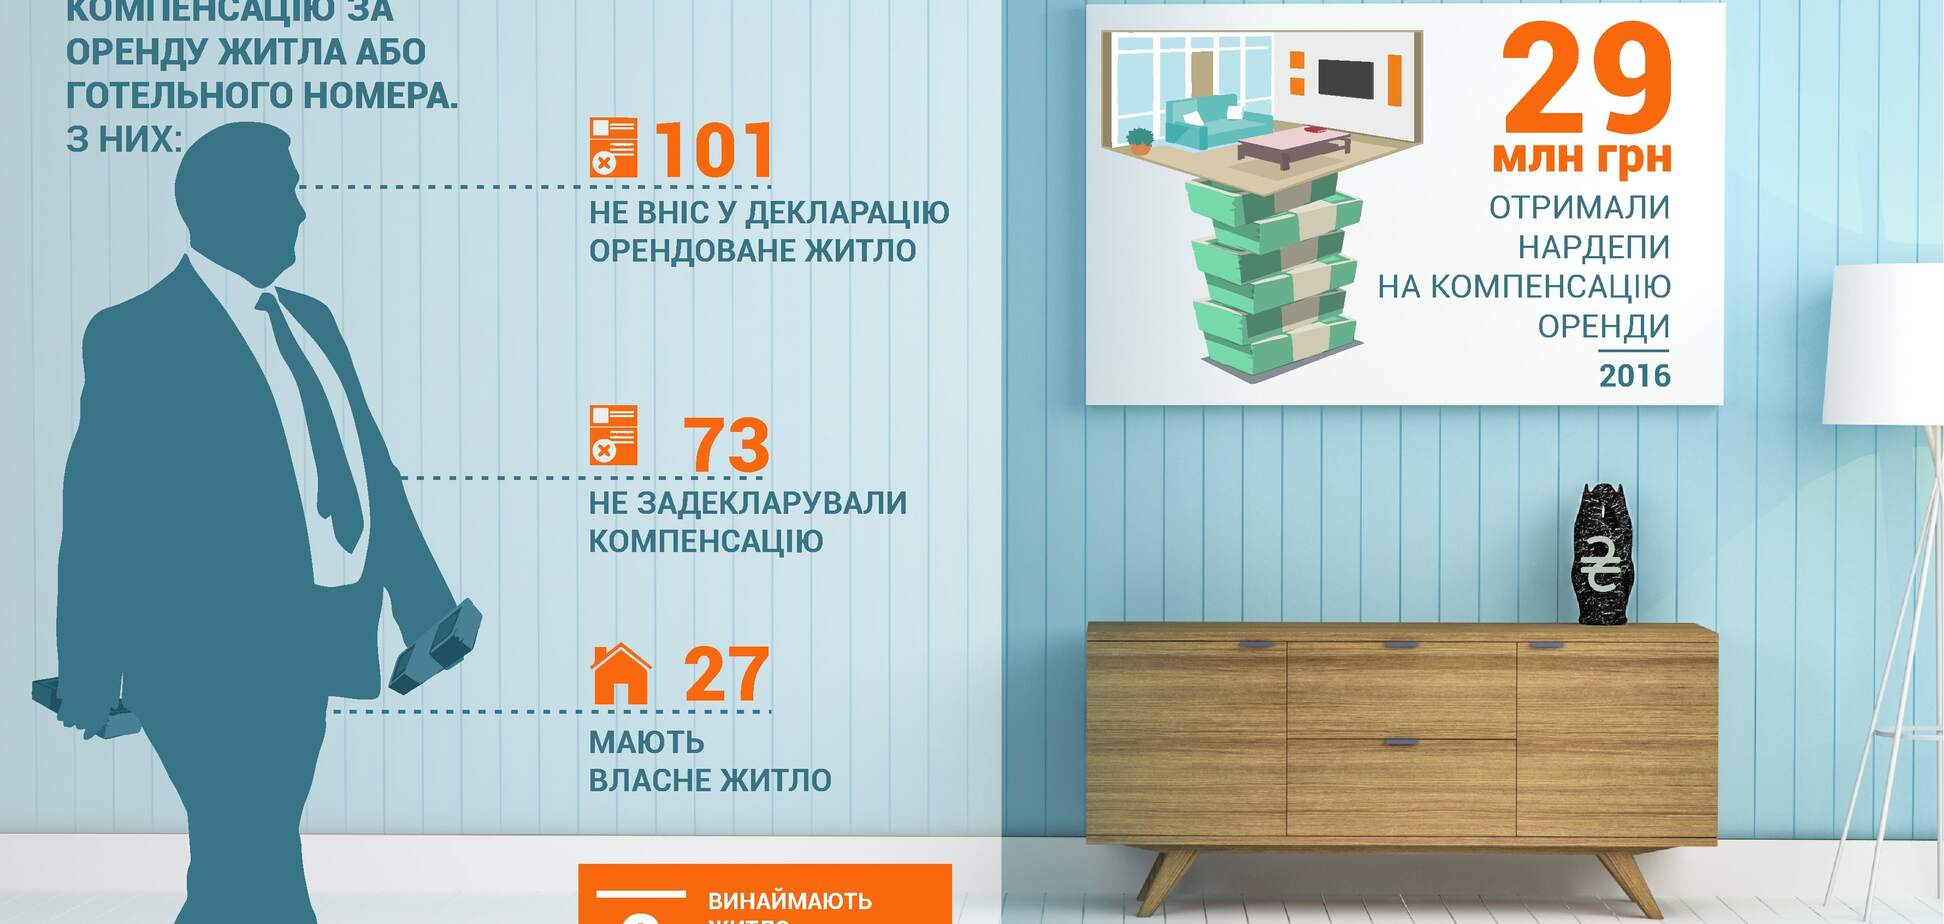 Не брезгуют даже миллионеры: стало известно, сколько нардепов получили деньги на отель, имея жилье в Киеве